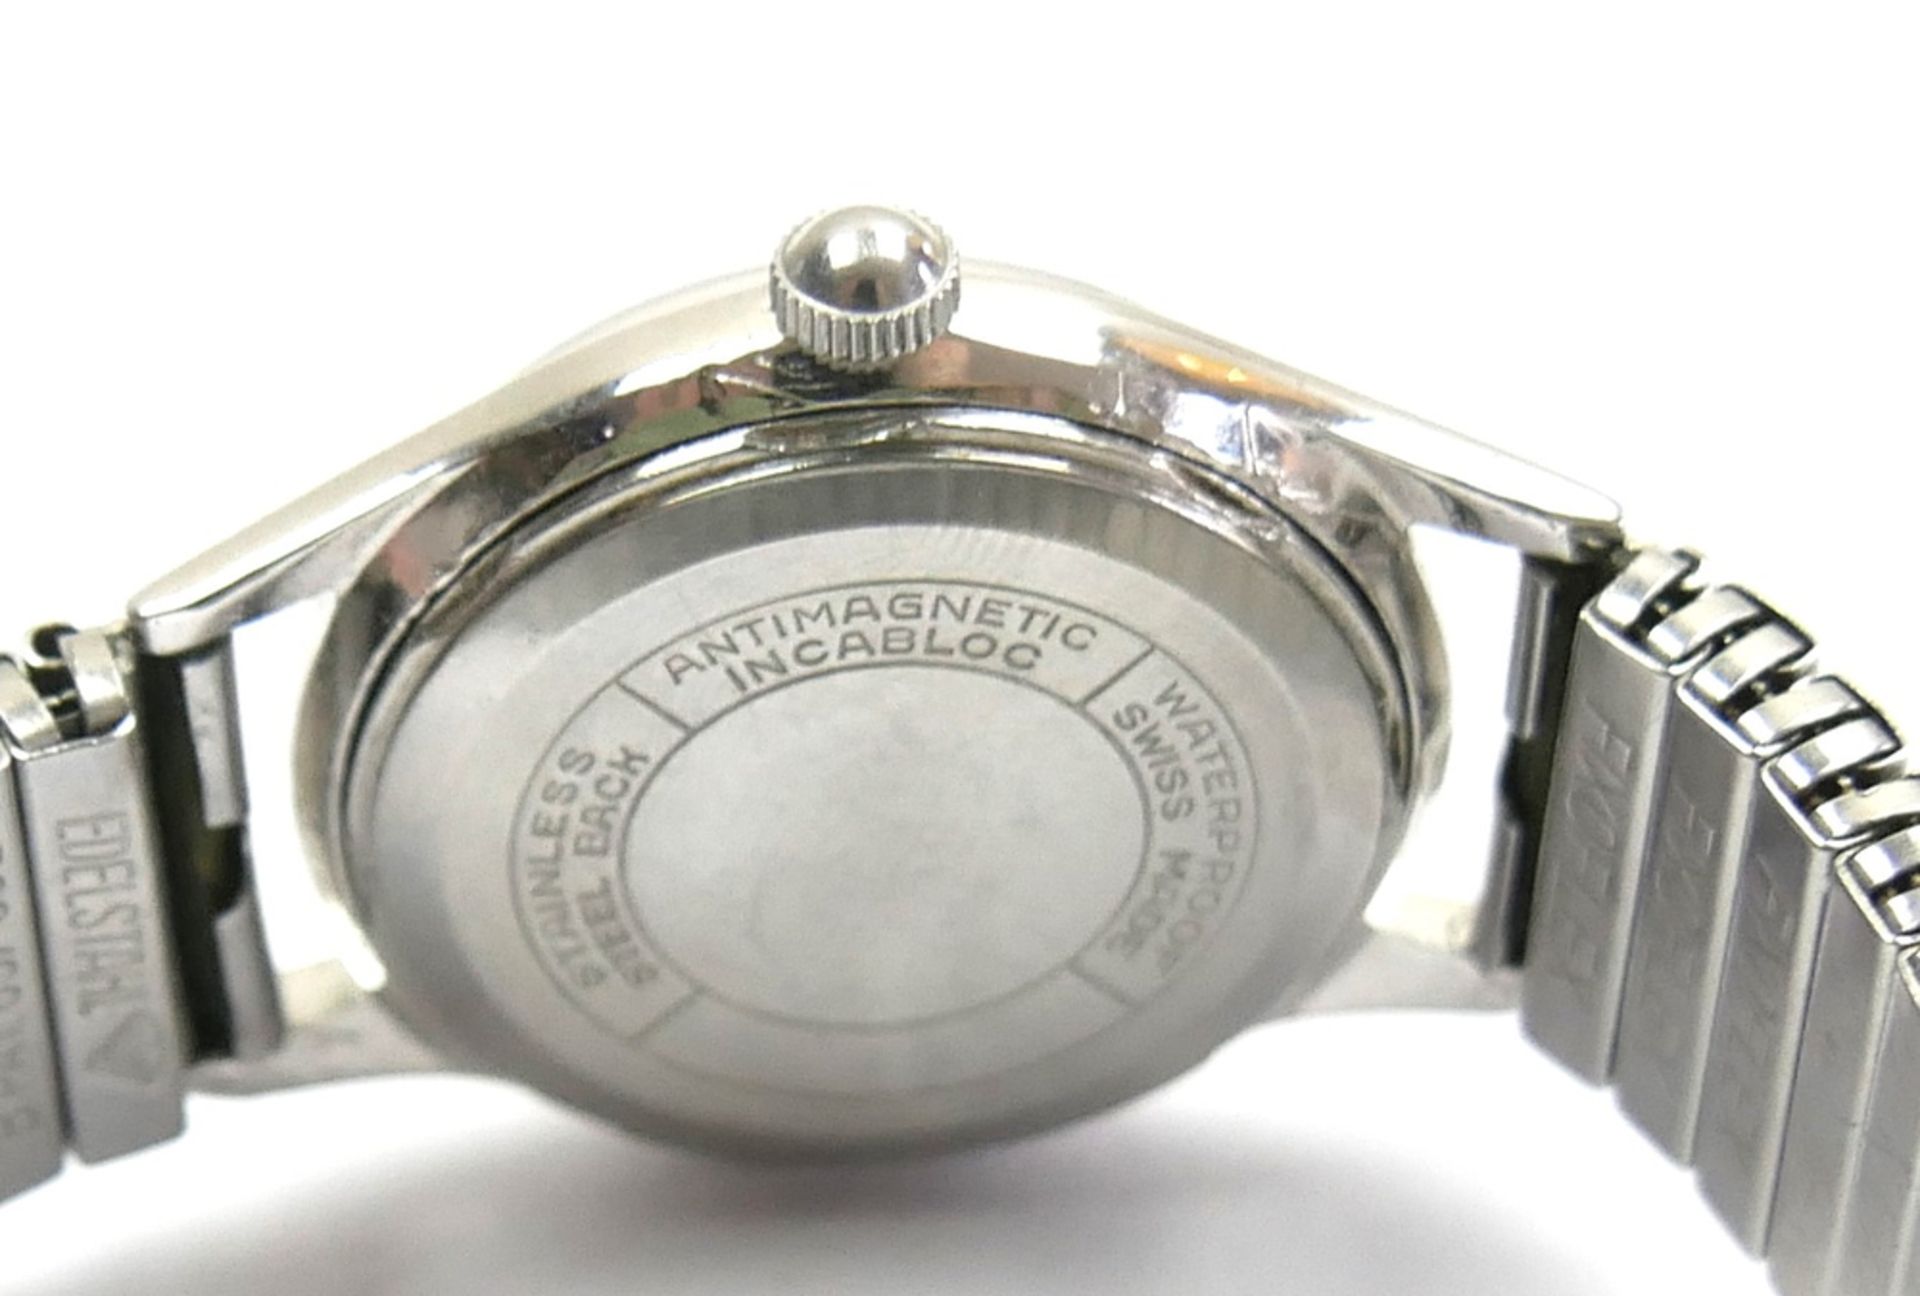 Rare Herren Armbanduhr Ascania Berlin (Swiss made) Handaufzug. Funktion geprüft. Guter Zustand - Bild 3 aus 3